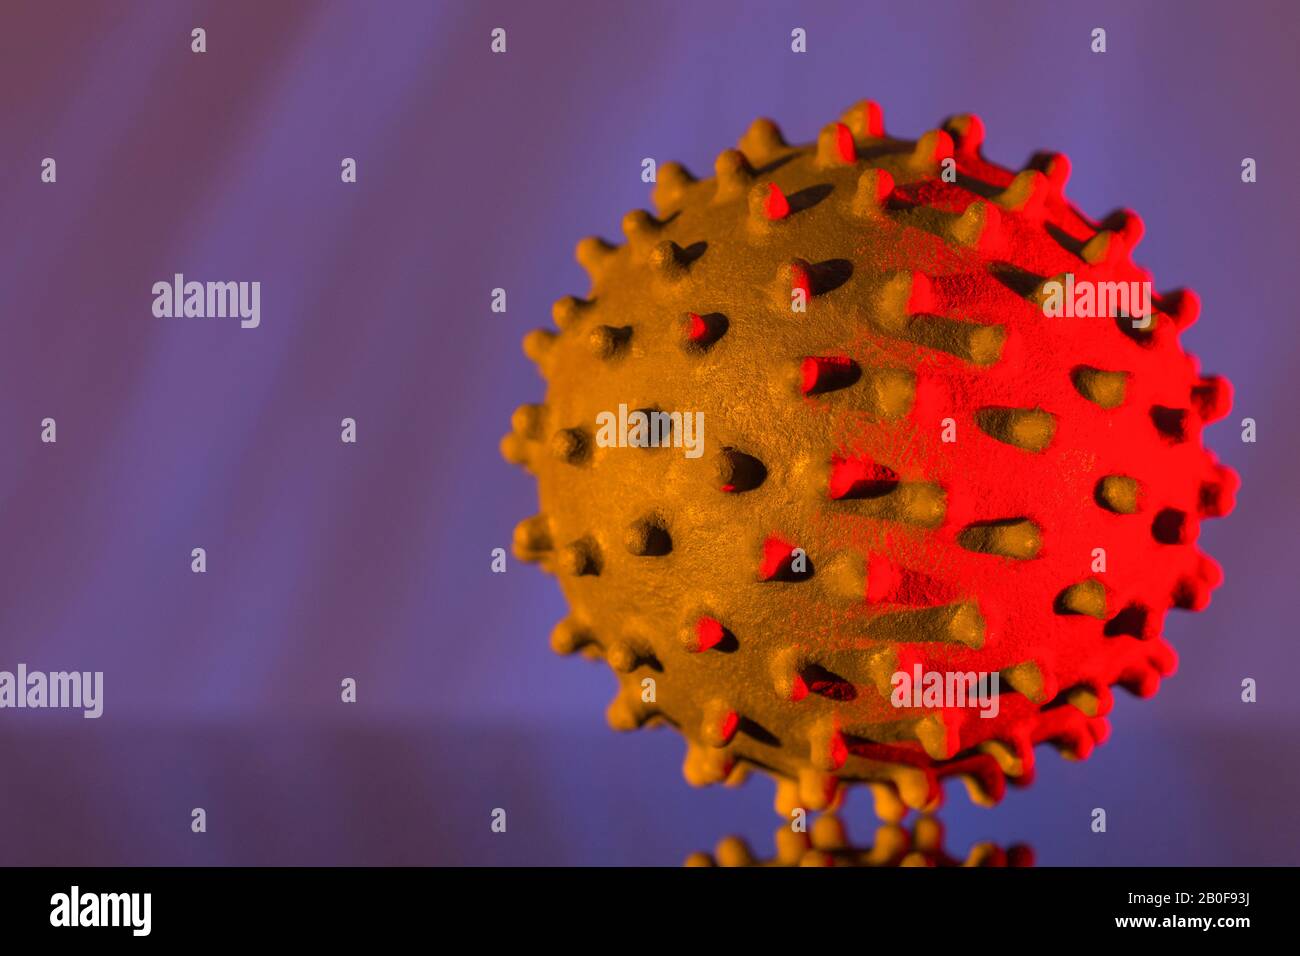 Modello di coronavirus di tipo influenzale, SARS, MERS, CV19 virus Covid-19 al centro dell'epidemia di virus Wuhan nella pandemia britannica. Astratto medico, ricerca di virus nel Regno Unito Foto Stock